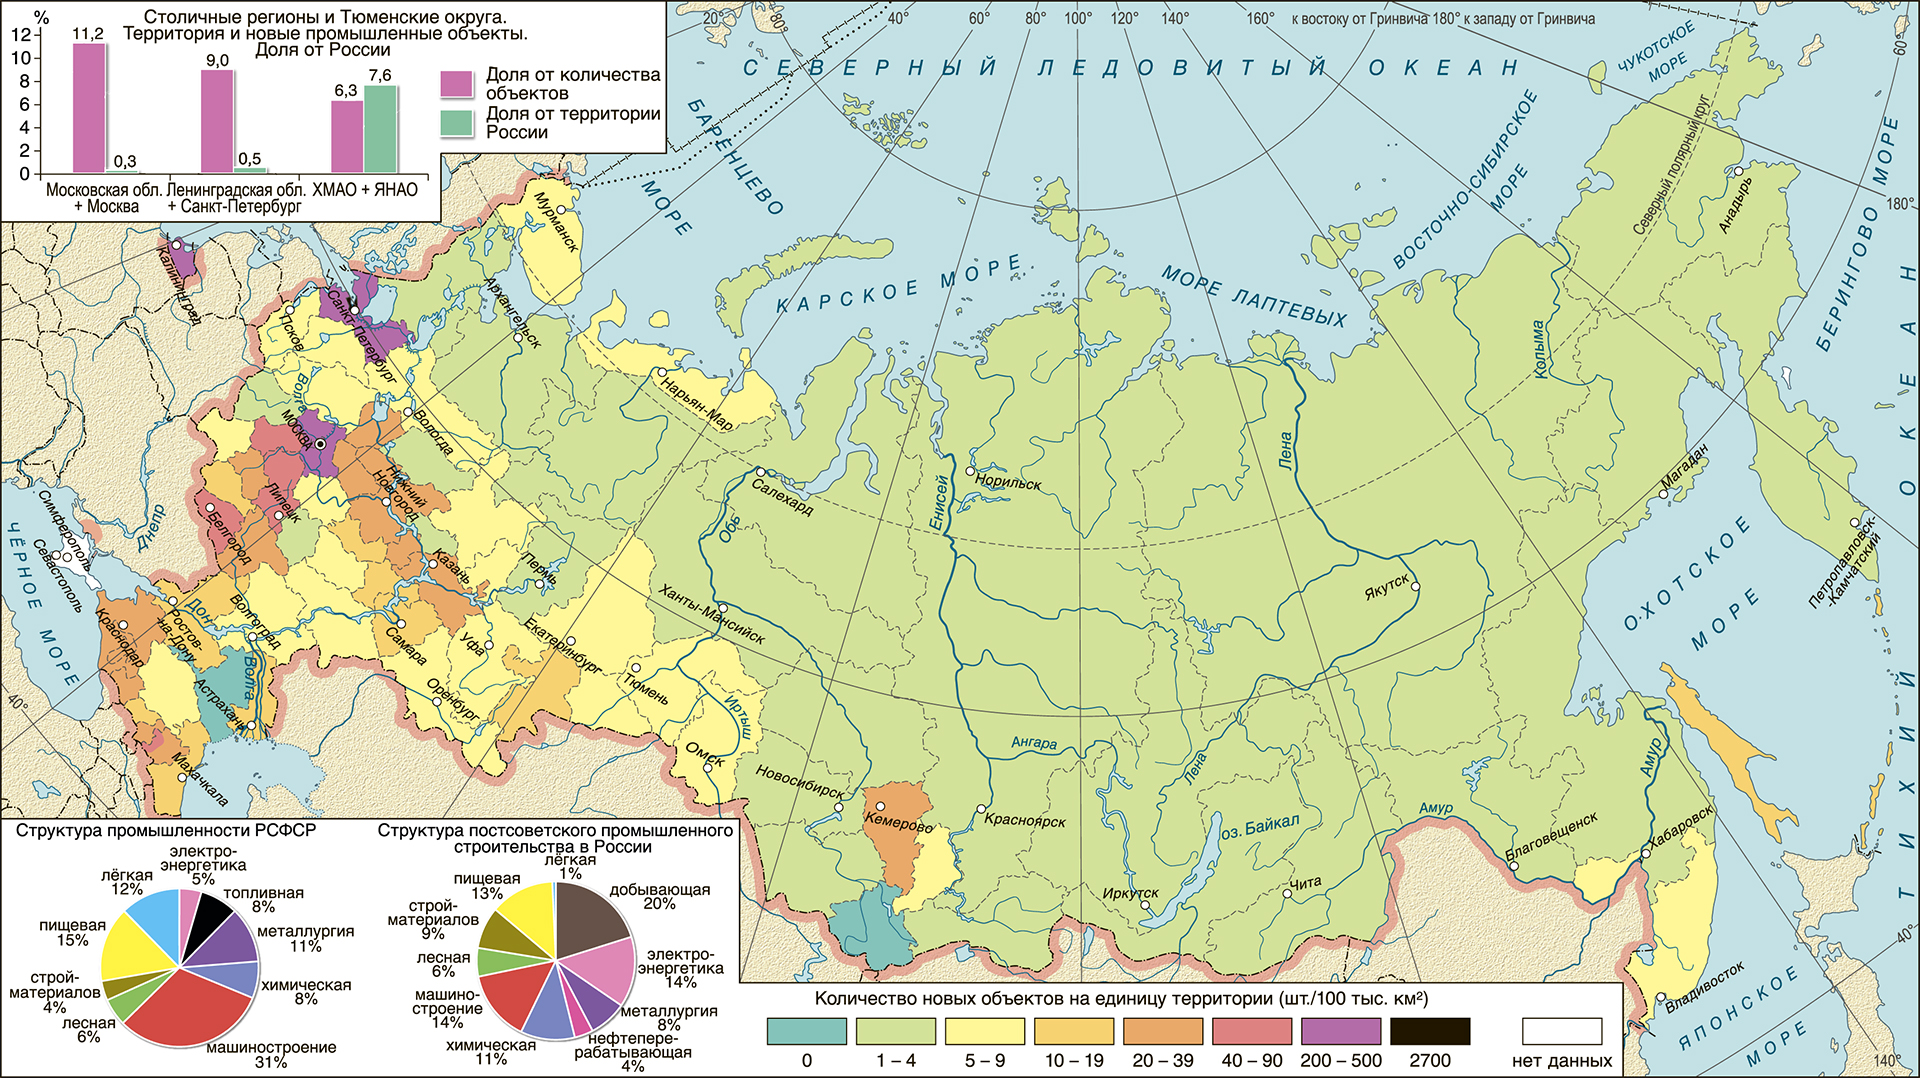  Промышленное освоение территории России в постсоветский период